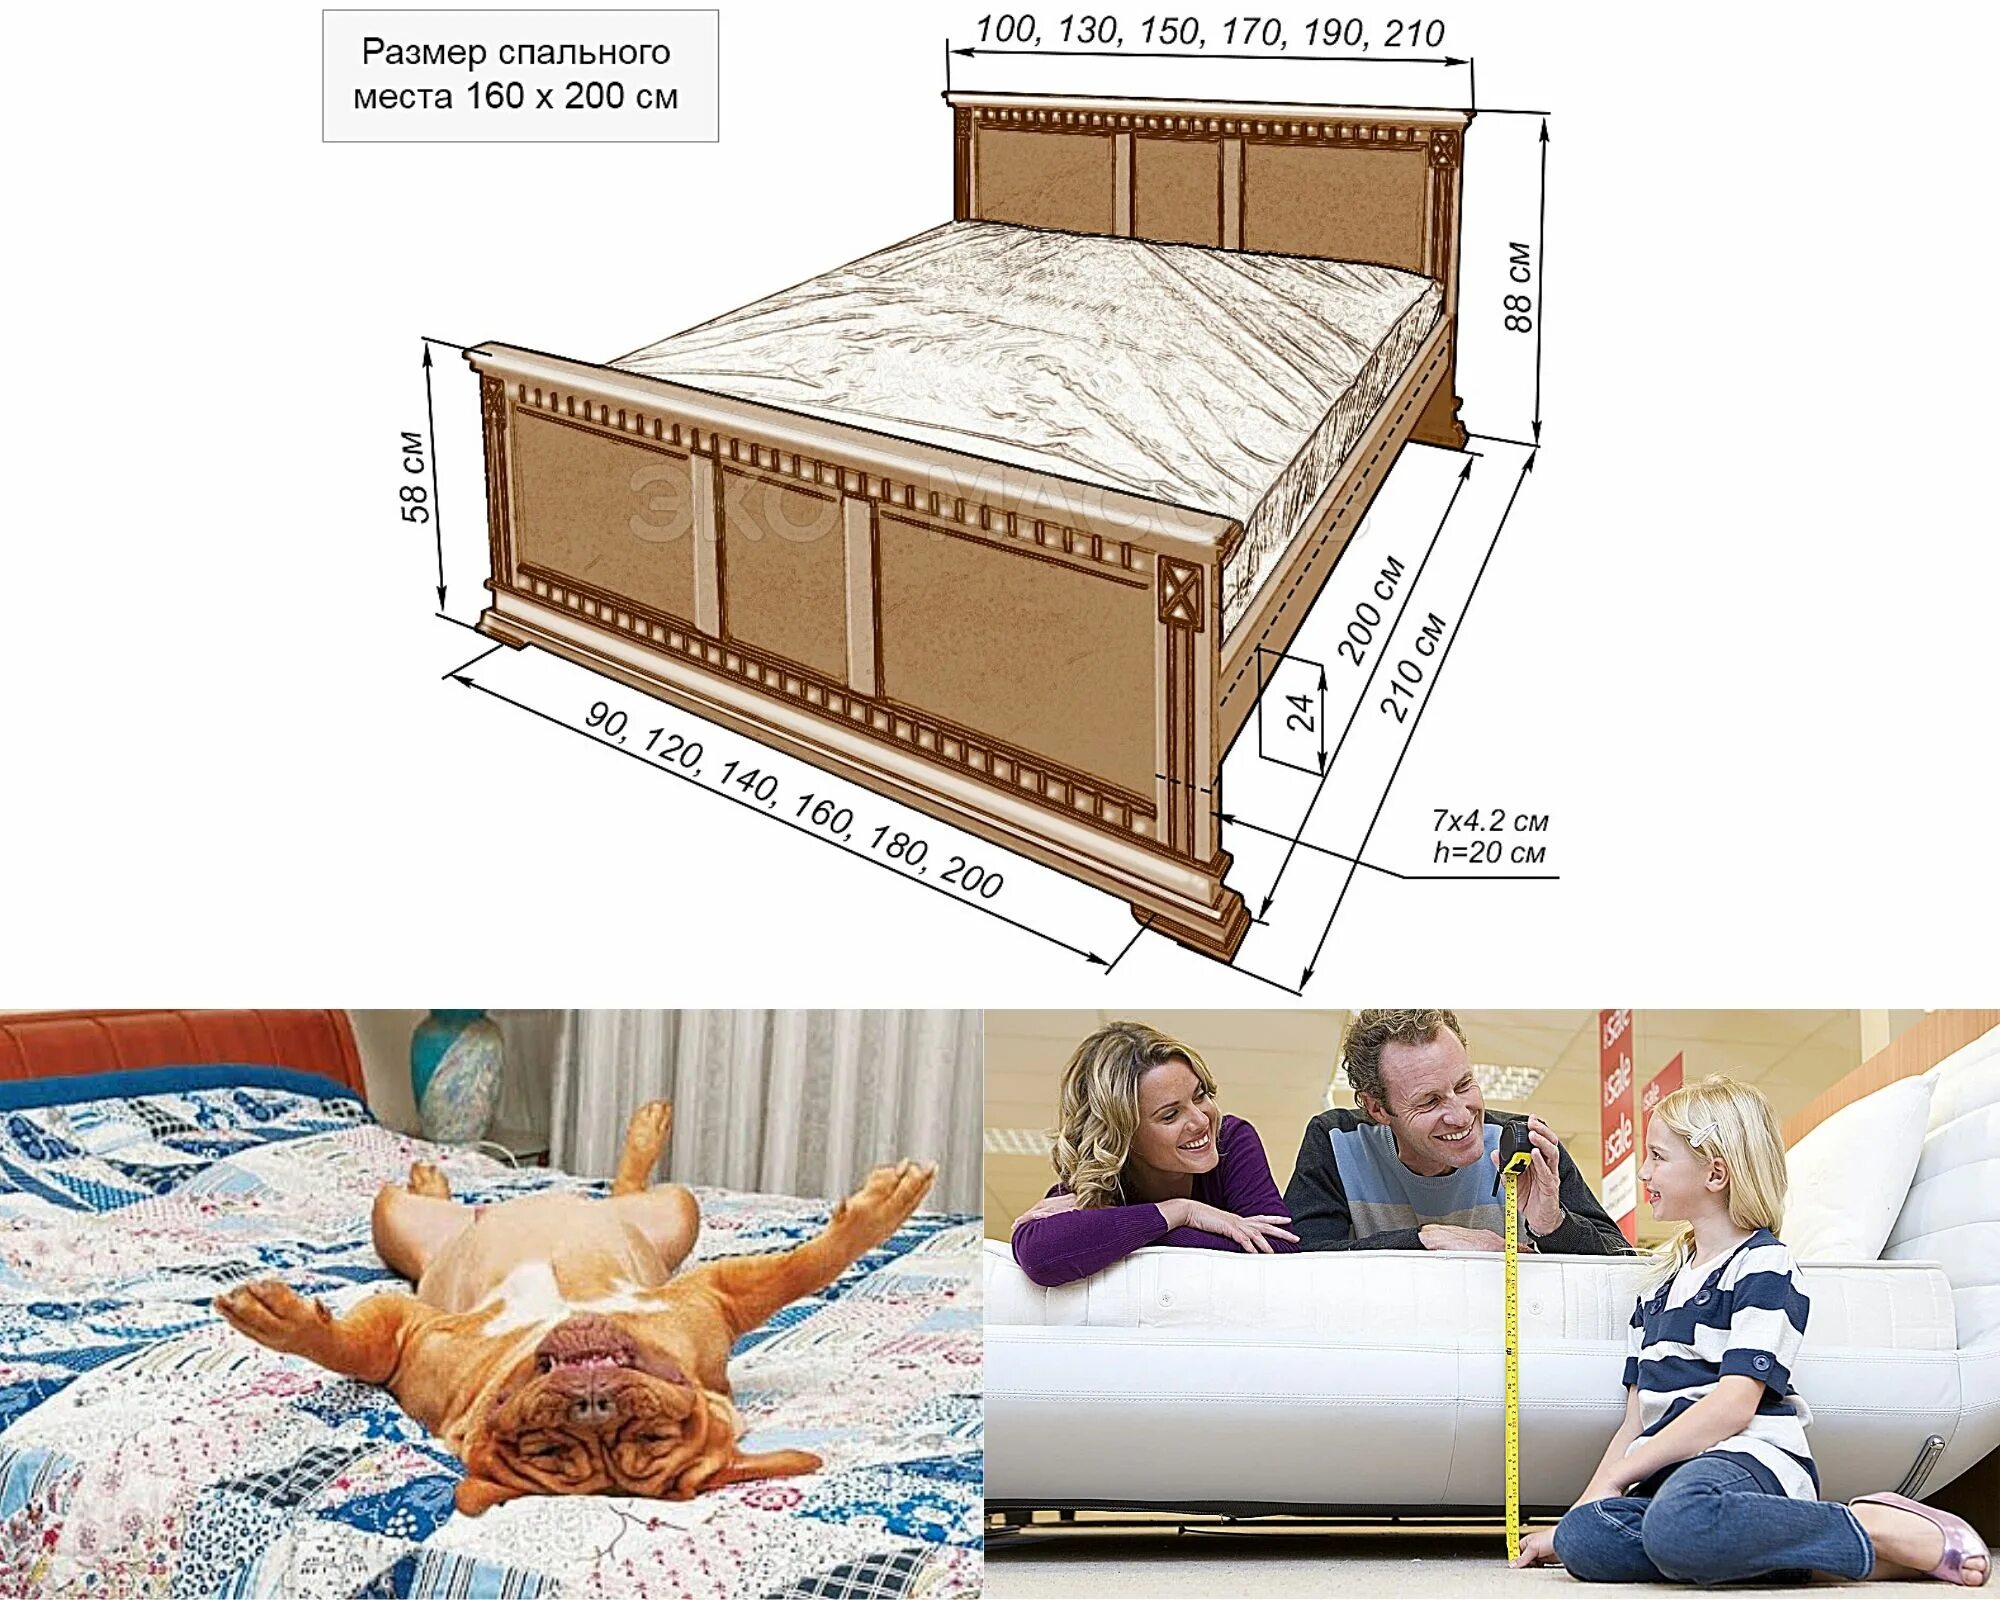 Какая длина кровати. Стандарт кровати двухспалки размер ширина. Габариты двуспальной кровати стандарт и евро. Кровать полуторка Размеры стандарт. Ширина двуспальной кровати.